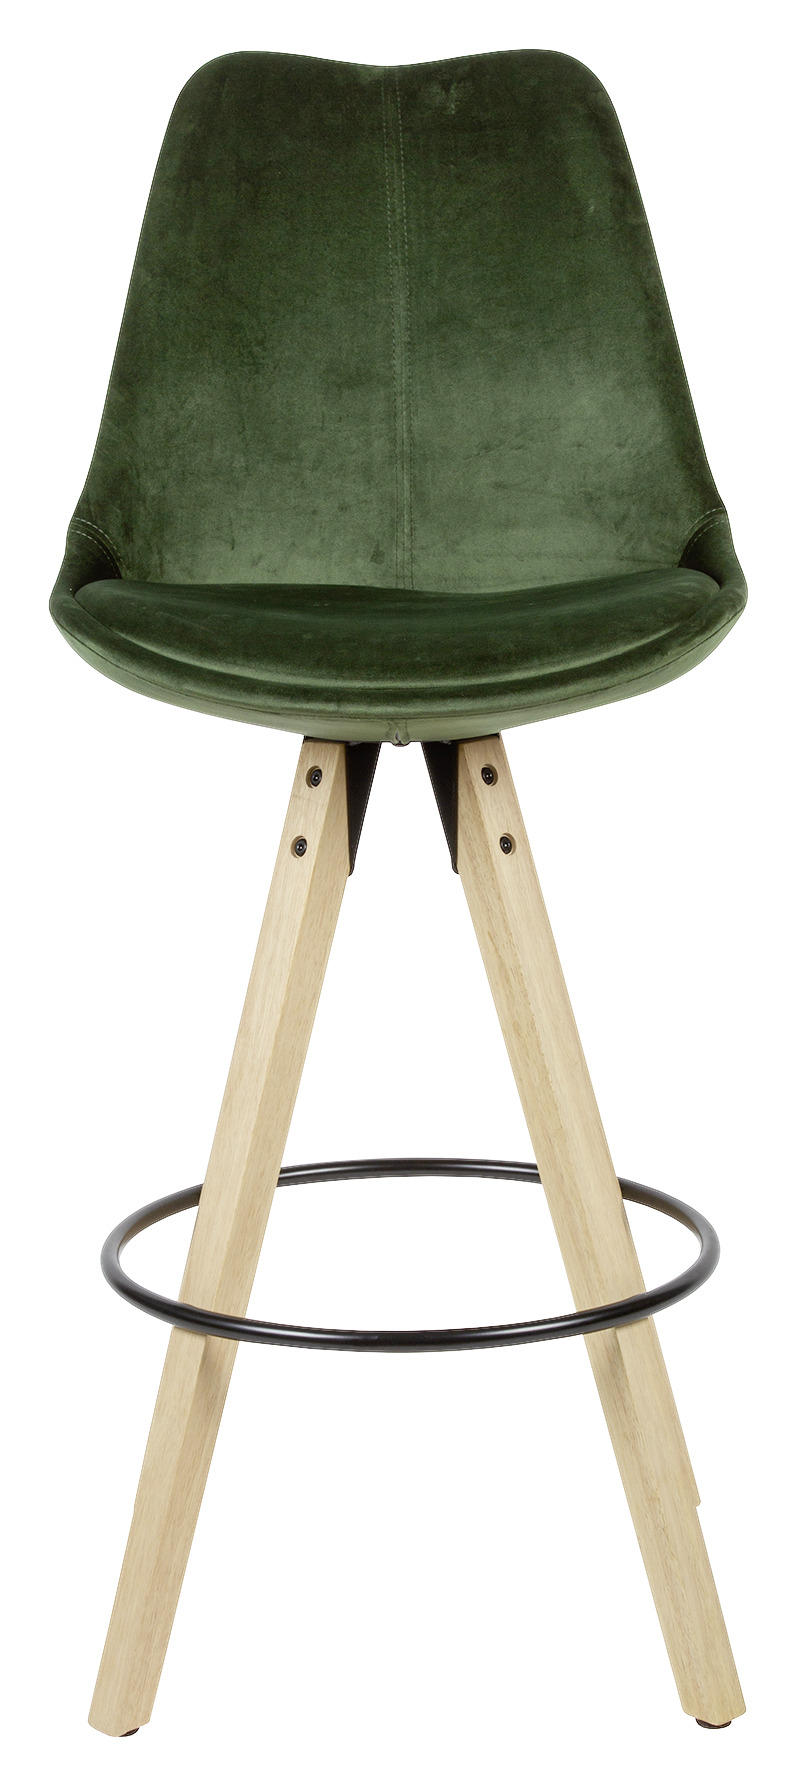 BARSTOL SET i grön  - grön/ekfärgad, Modern, trä/textil (49/113/49cm) - MID.YOU